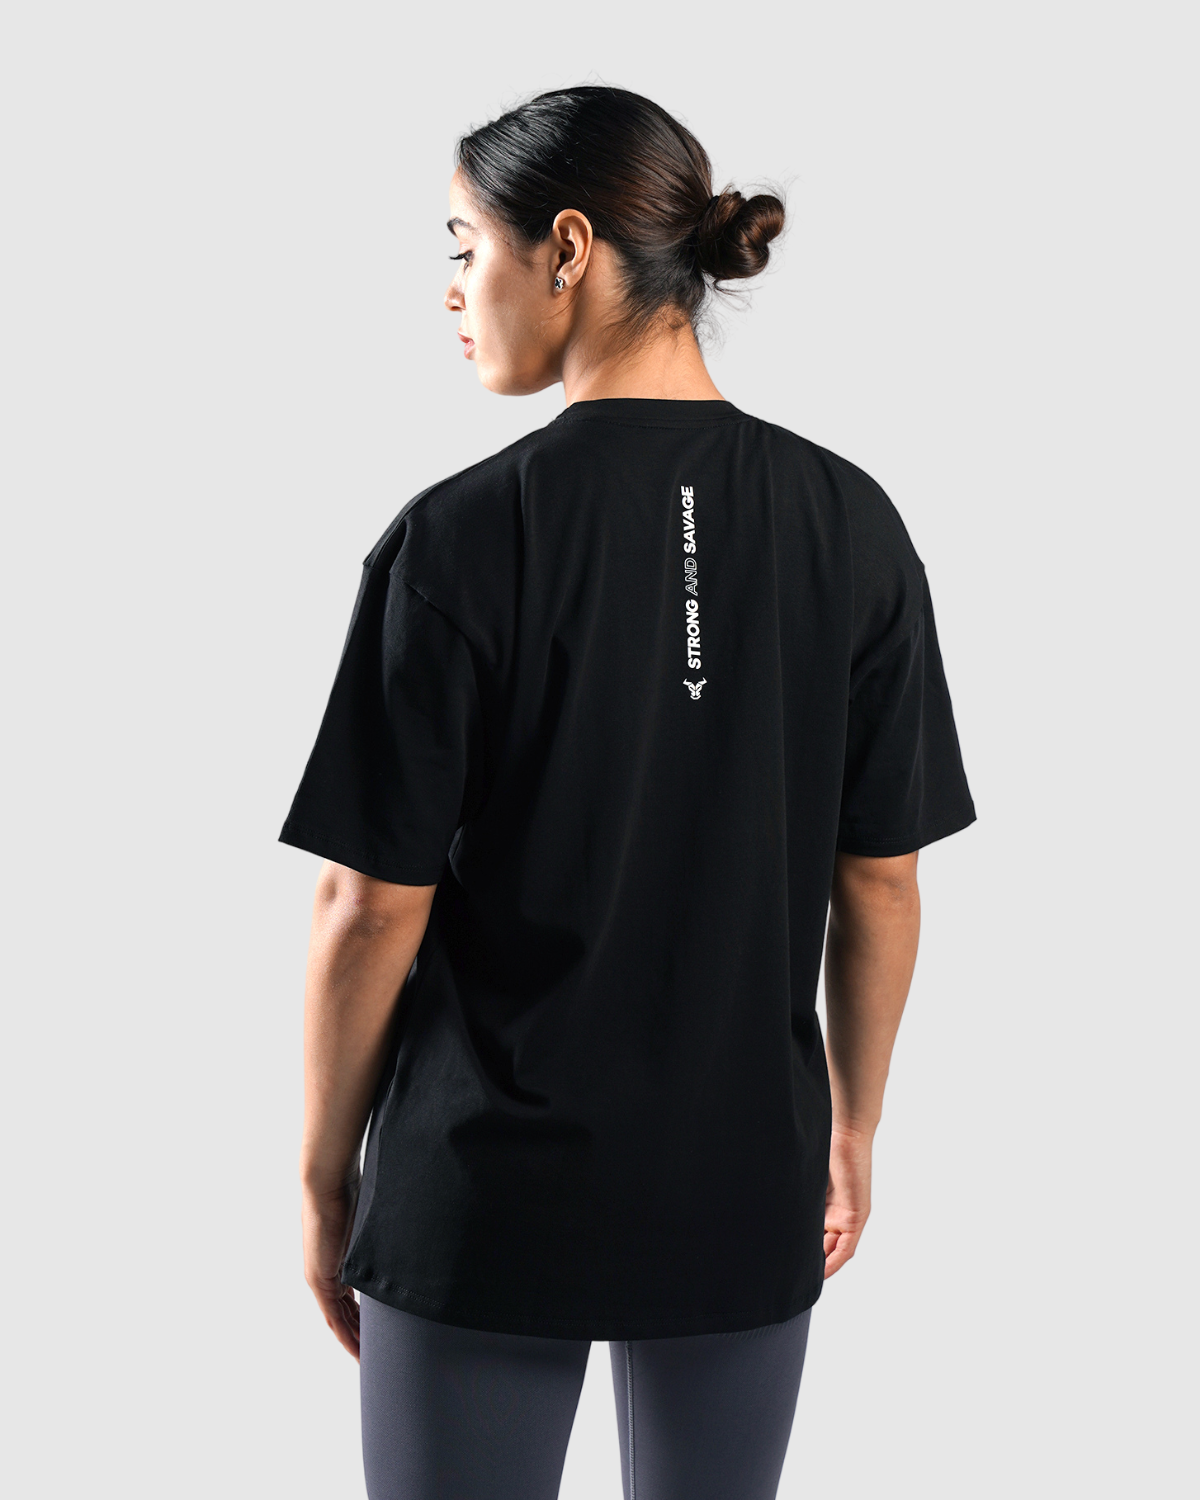 T-shirt Femme Essential Oversize - Noir 